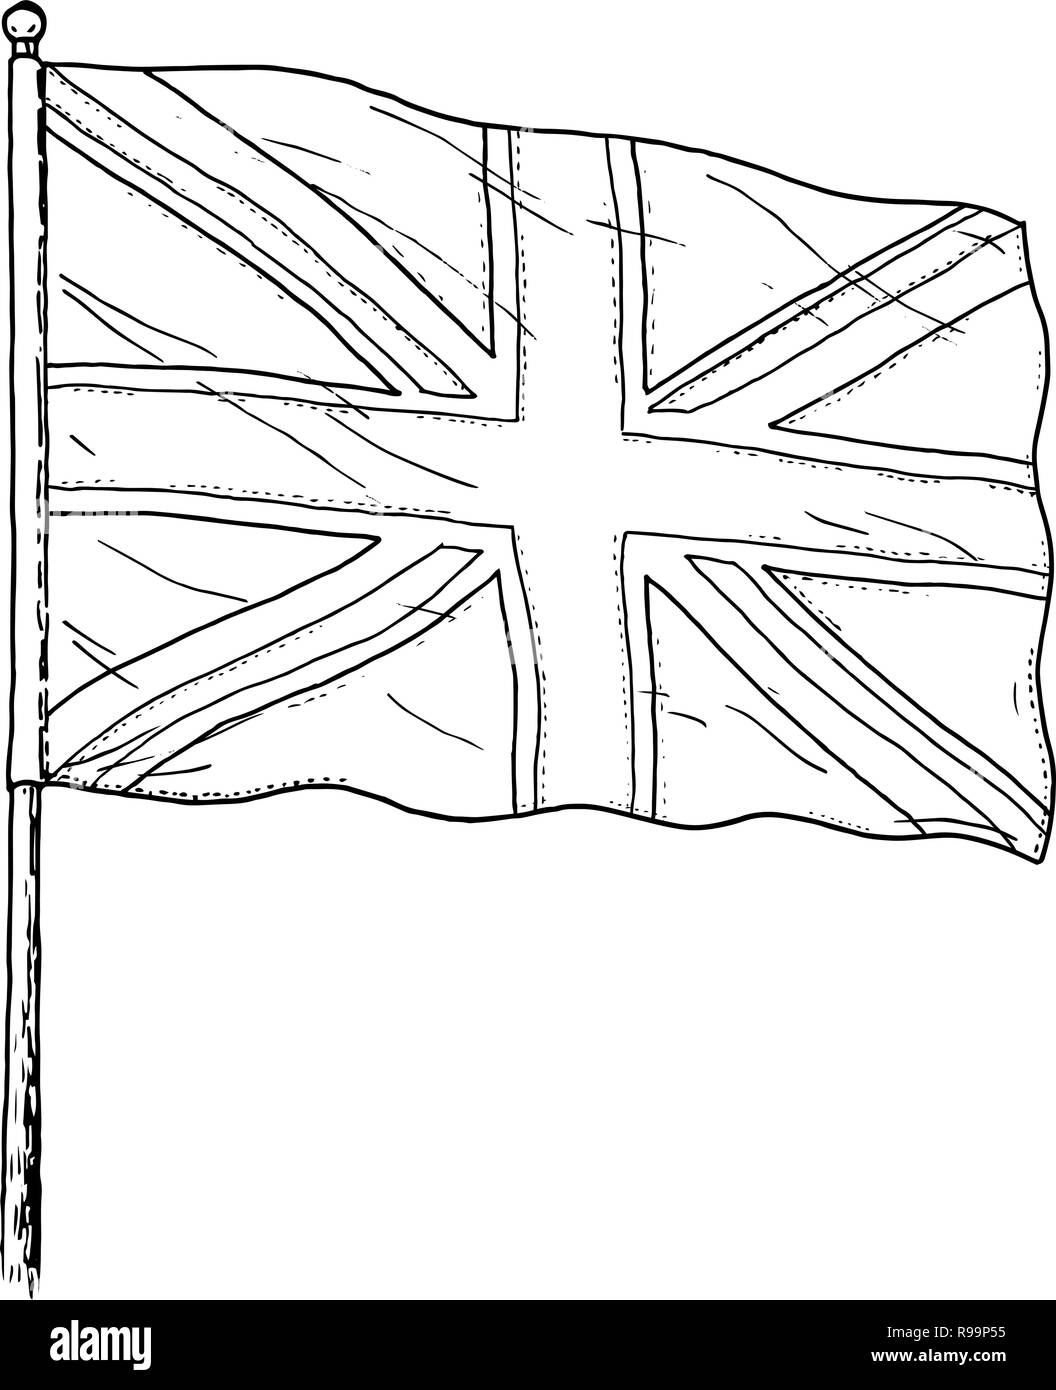 Flagge des Vereinigten Königreichs - Zeichnung - vintage wie schwarz und weiß Abbildung: Britische Flagge - Union Jack. Auf weissem Hintergrund. Stock Vektor